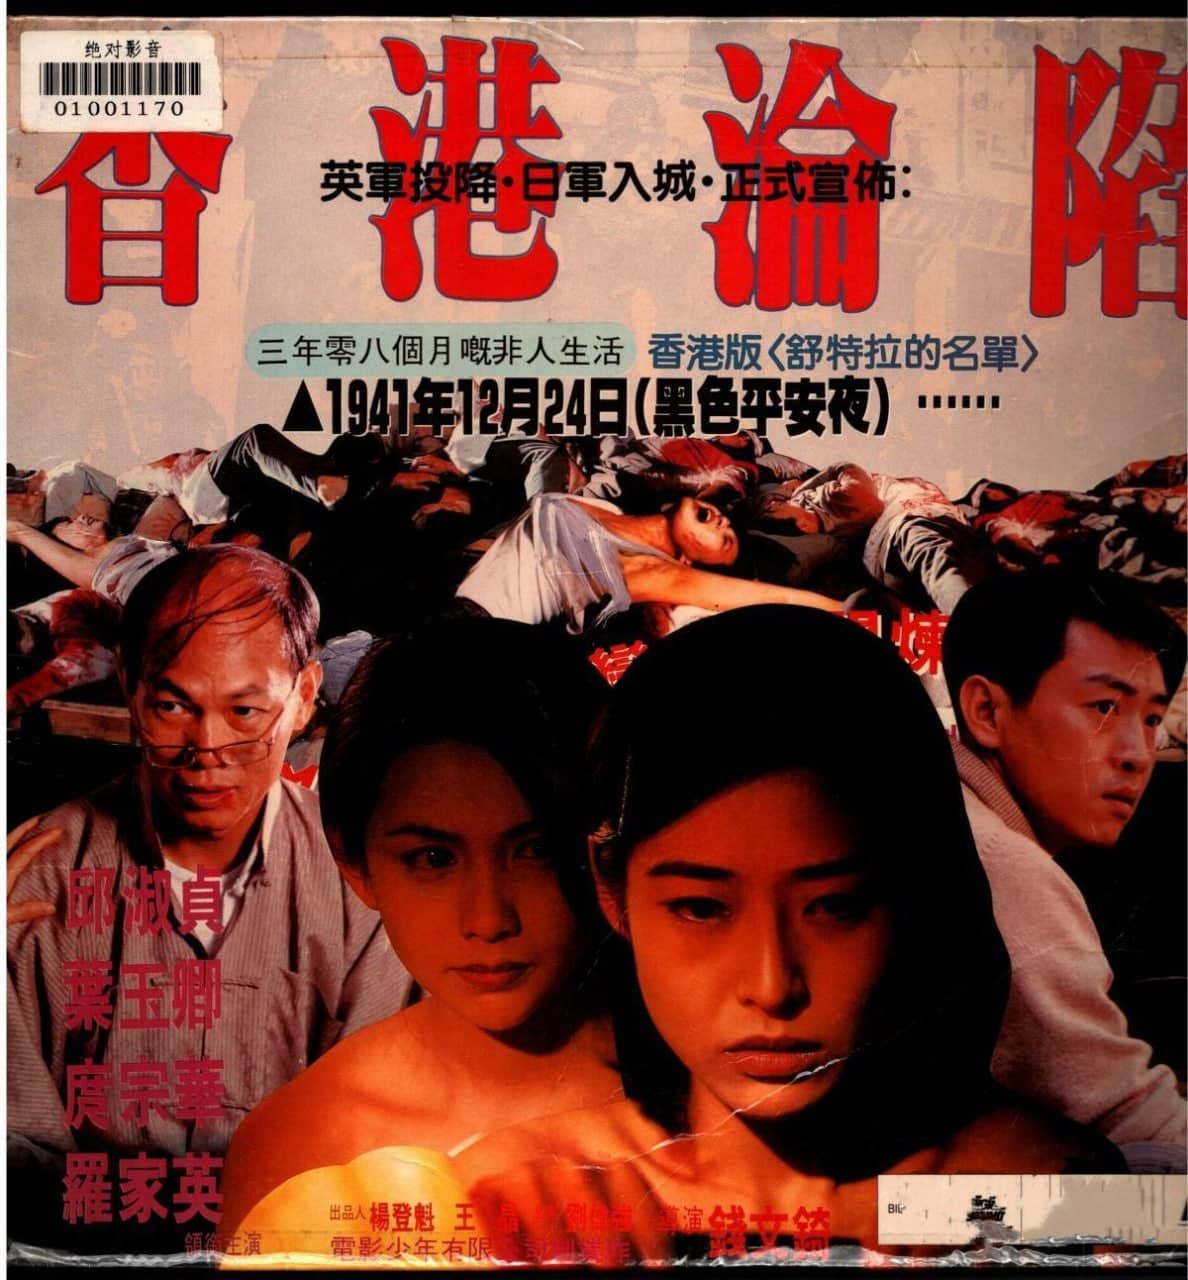 【在线免和谐】香港沦陷 香港淪陷 (1994)